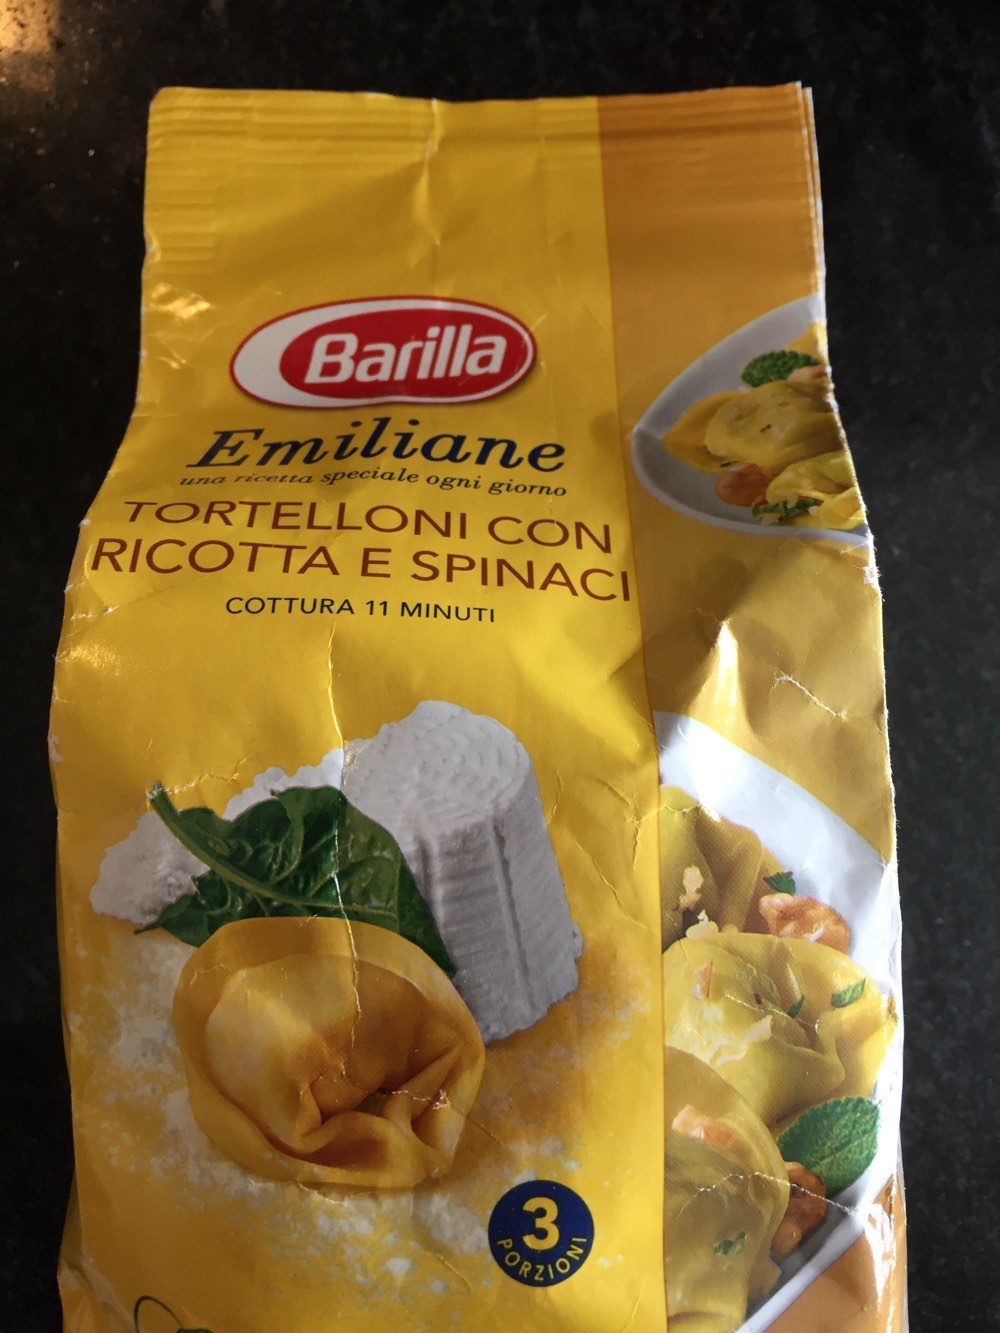 Emiliane - Tortelloni con Ricotta e Spinachi - Product